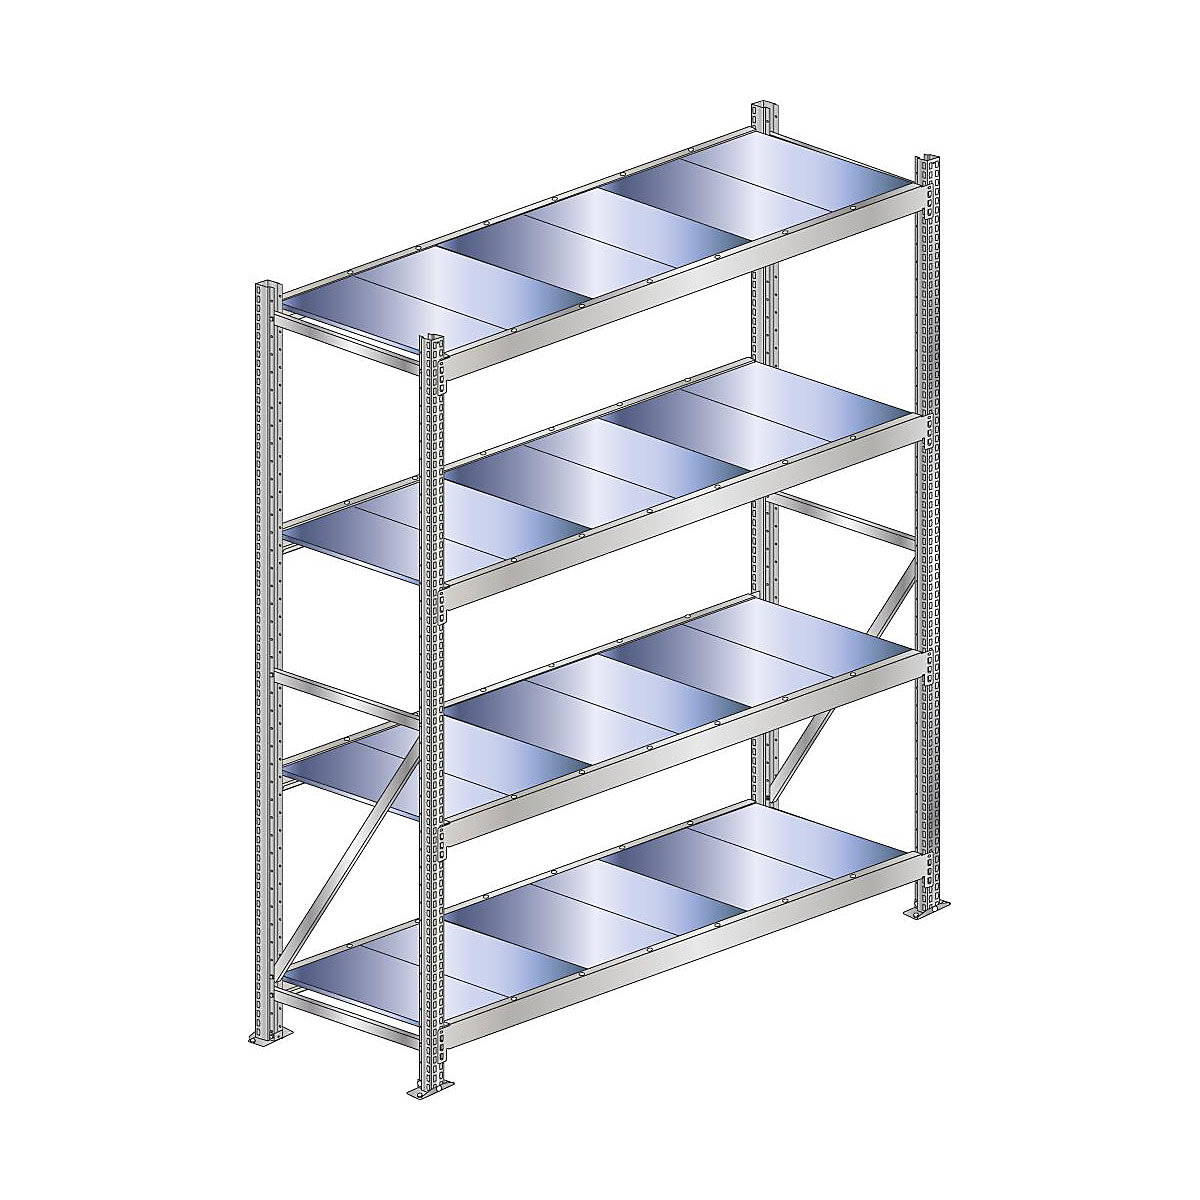 Wide span shelf unit, shelf load 500 kg – SCHULTE, shelf width 2500 mm, standard shelf unit, height 2500 mm, depth 500 mm